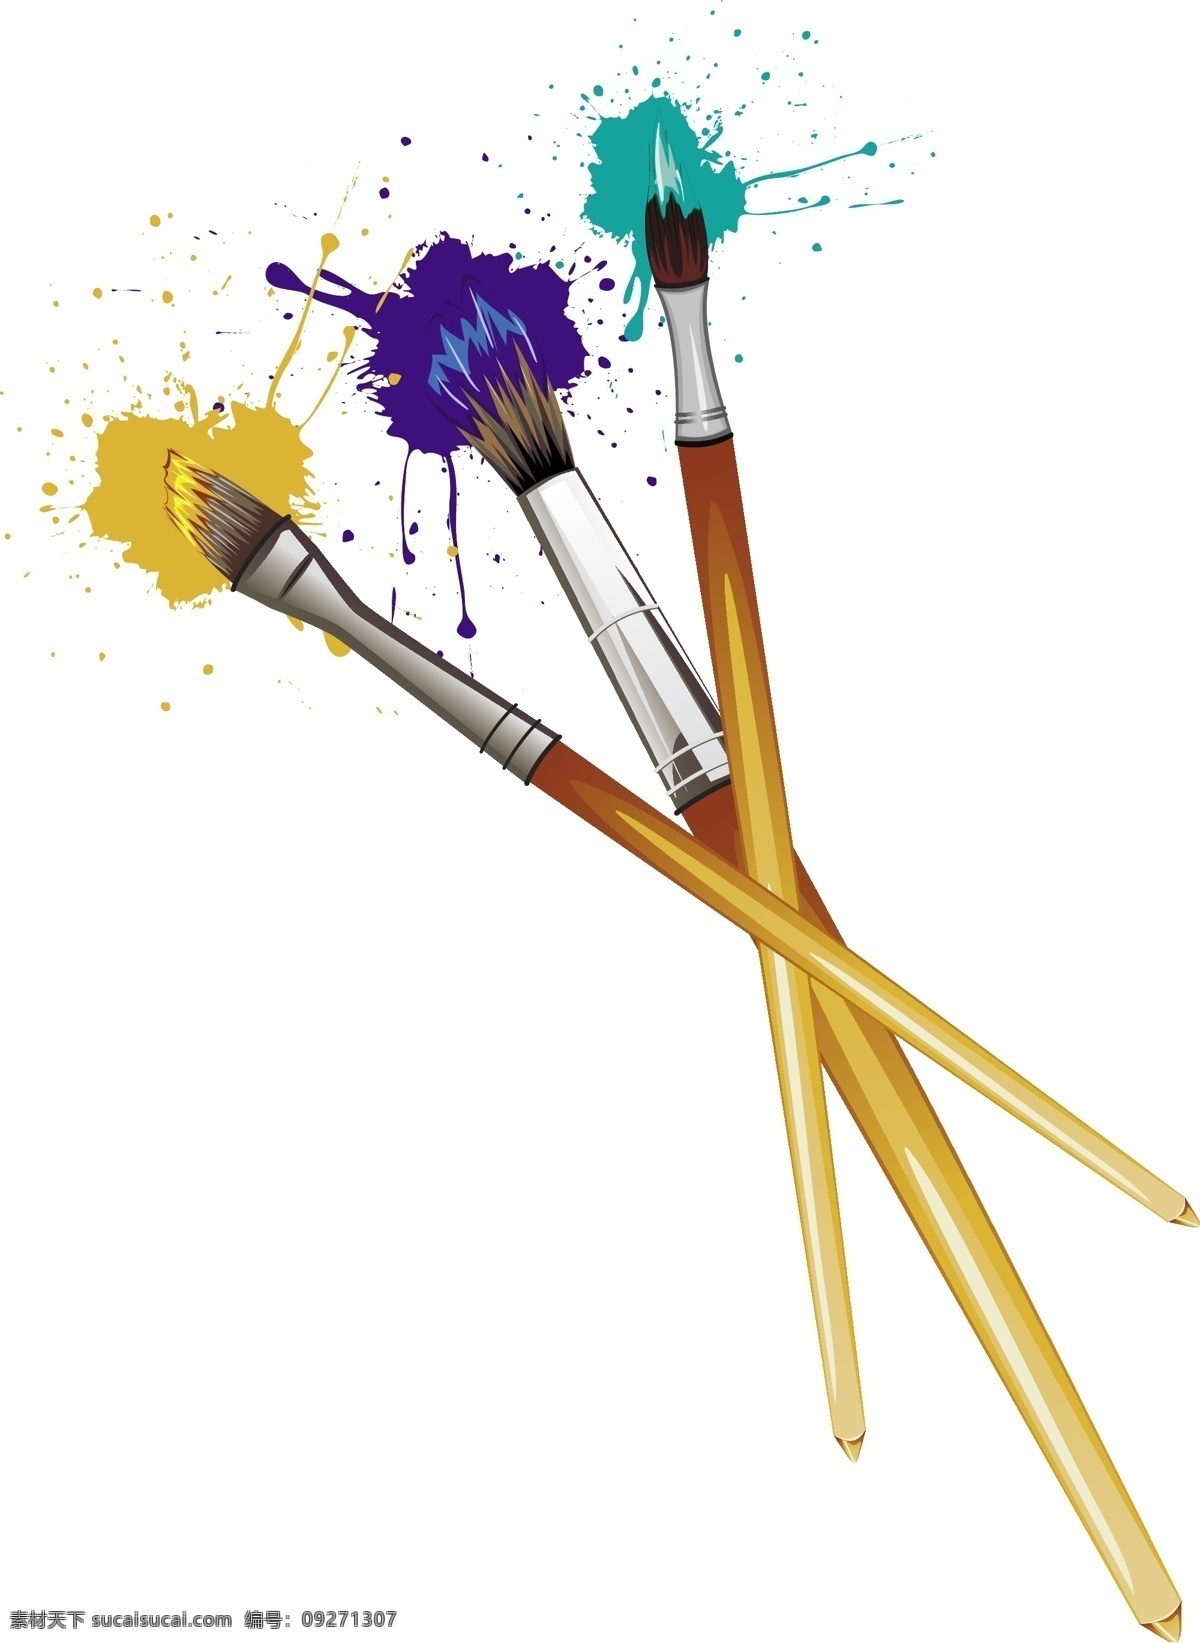 画画用品 绘画工具 调色板 画画 颜色盘 色彩 调色盘 颜料 美术 画板 画画笔 颜料盘 画纸 绘画板 铅笔 画笔 画画工具 画画用具